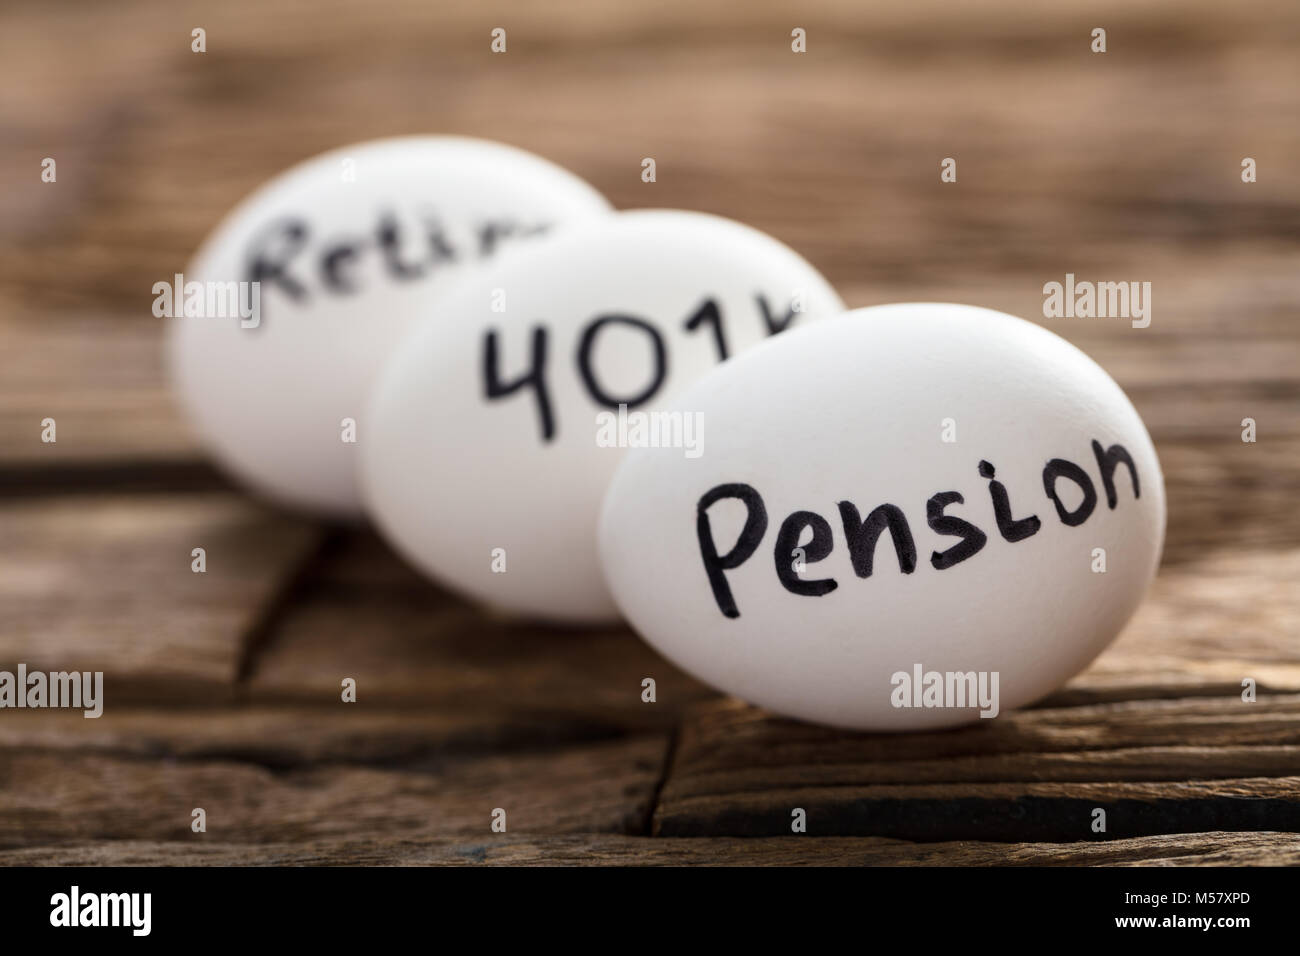 Pension de retraite 401K et écrit sur des œufs blancs Banque D'Images